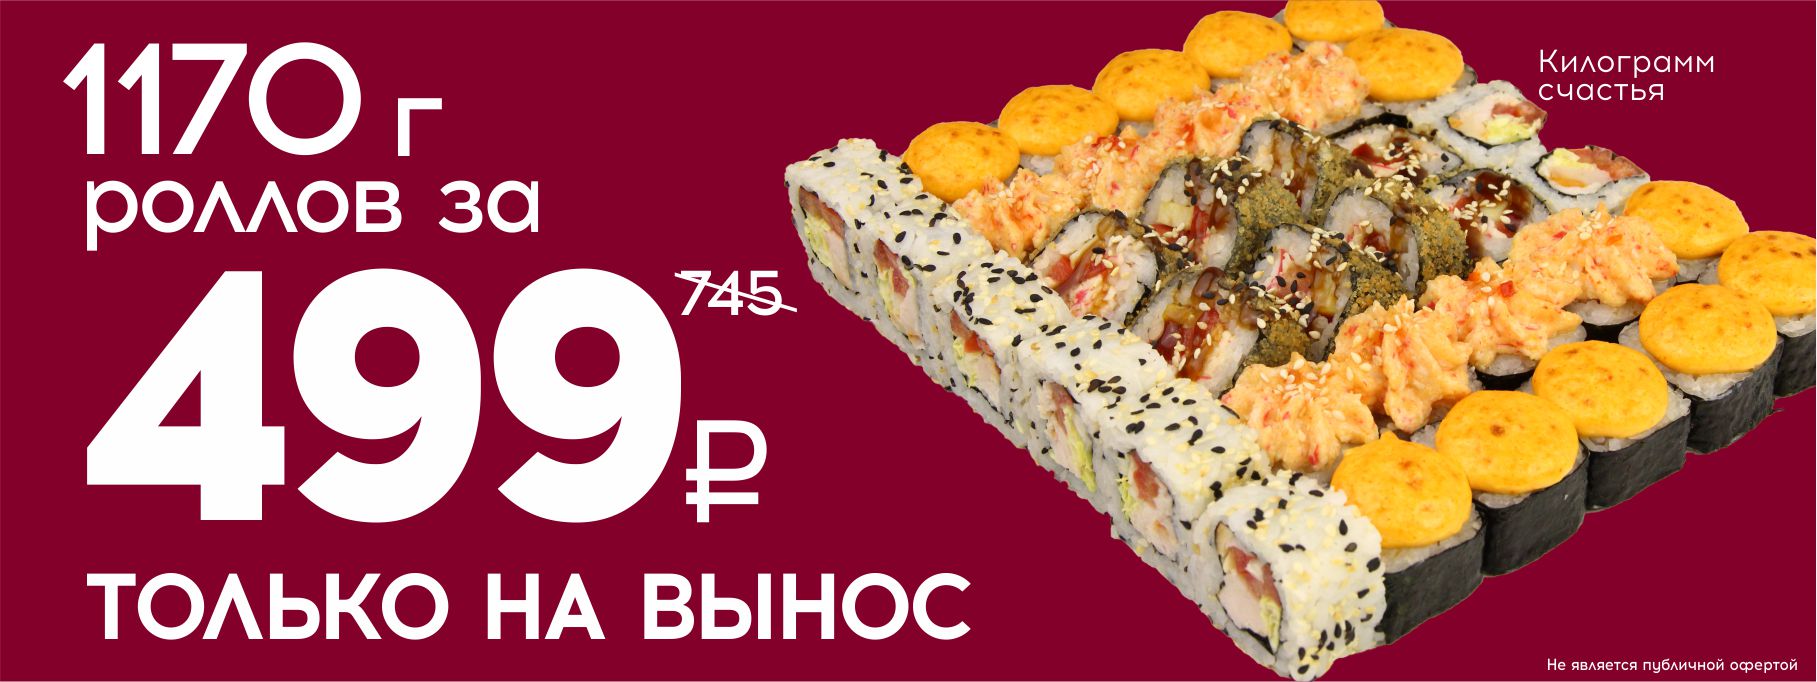 Заказать суши в октябрьске фото 46